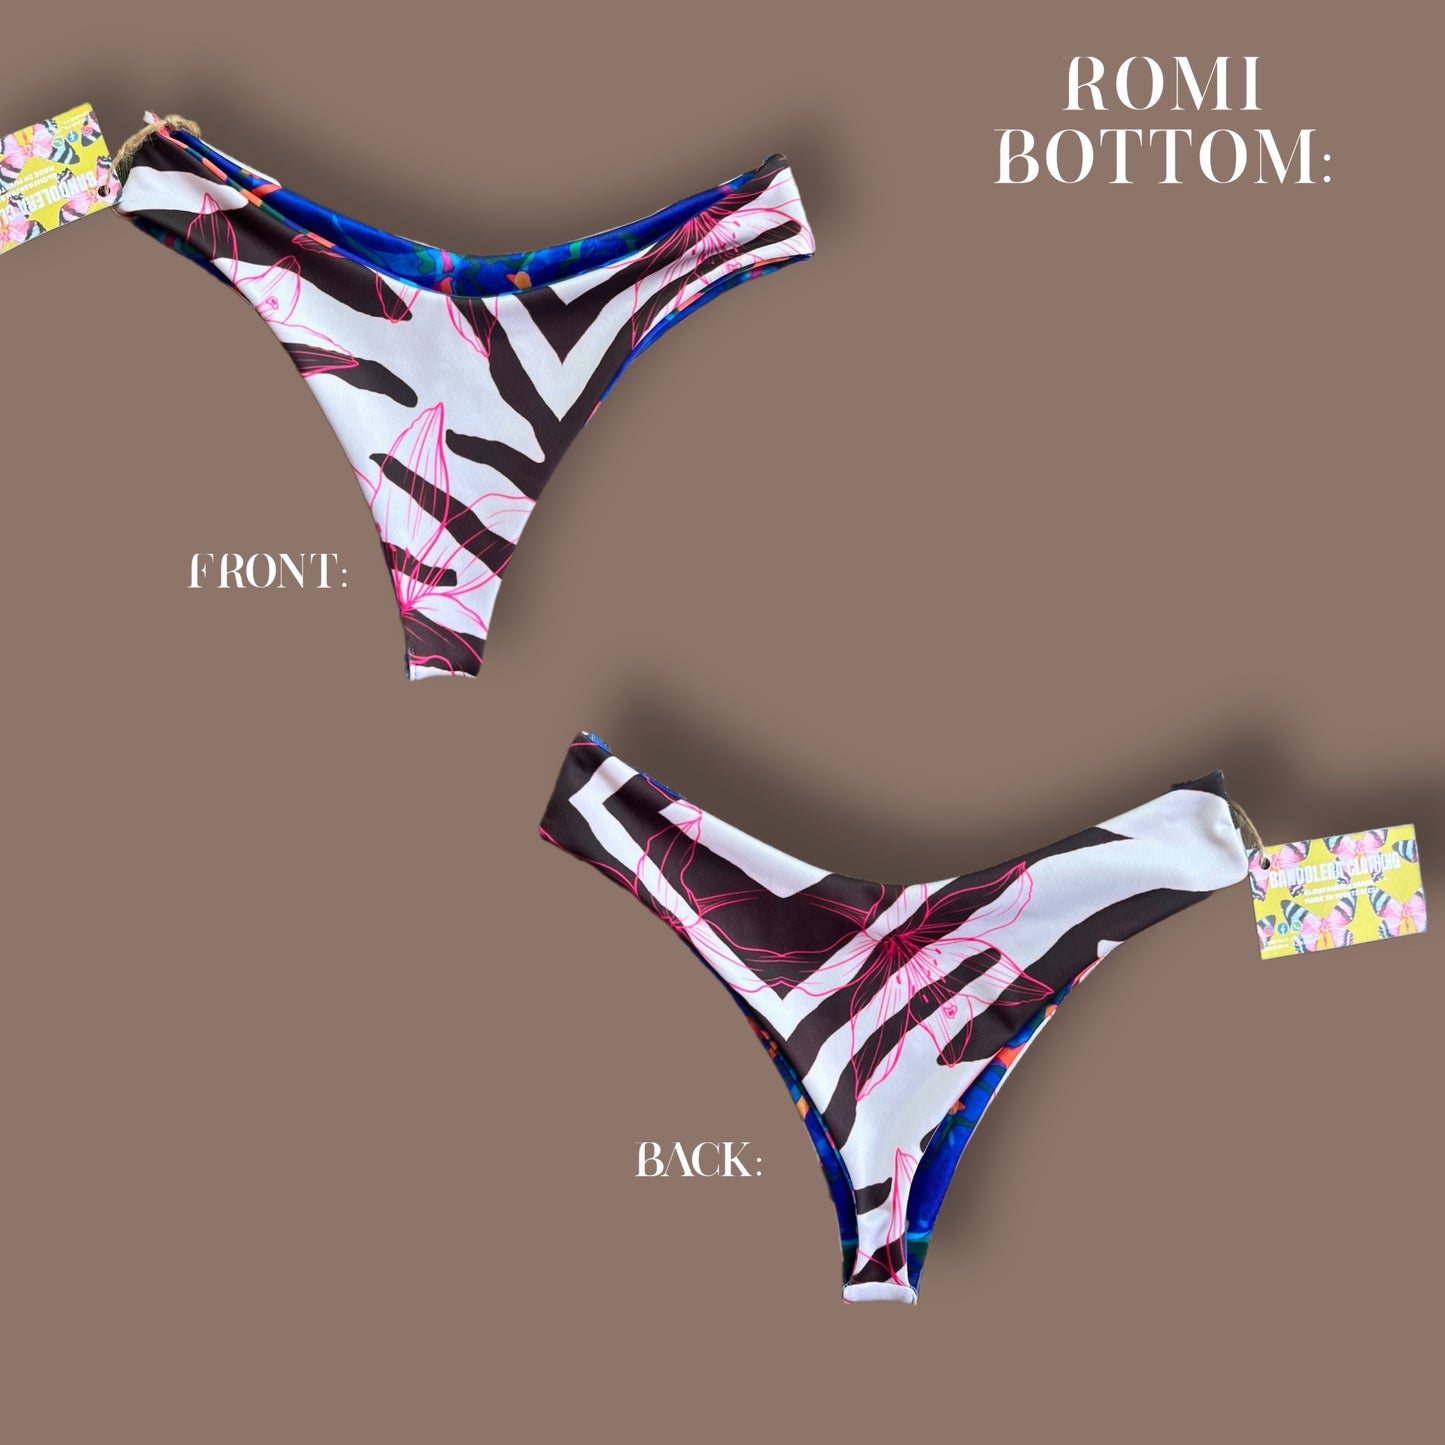 Romi Bottom (solo bottom)